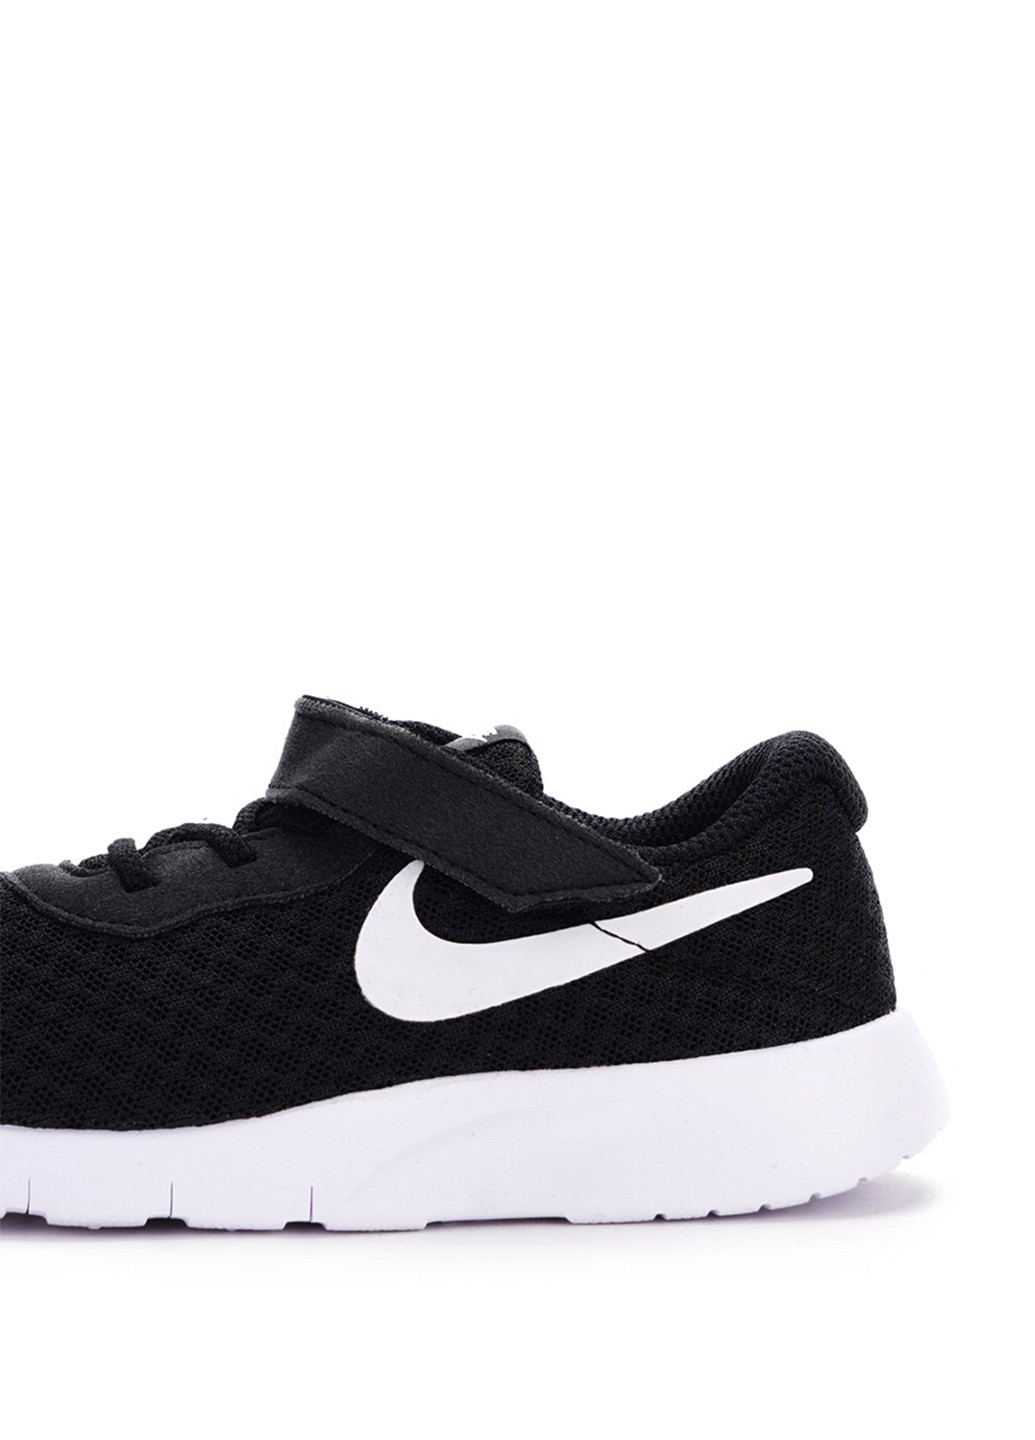 Черно-белые всесезонные кроссовки Nike Tanjun (Tdv) Toddler Boys' Shoe